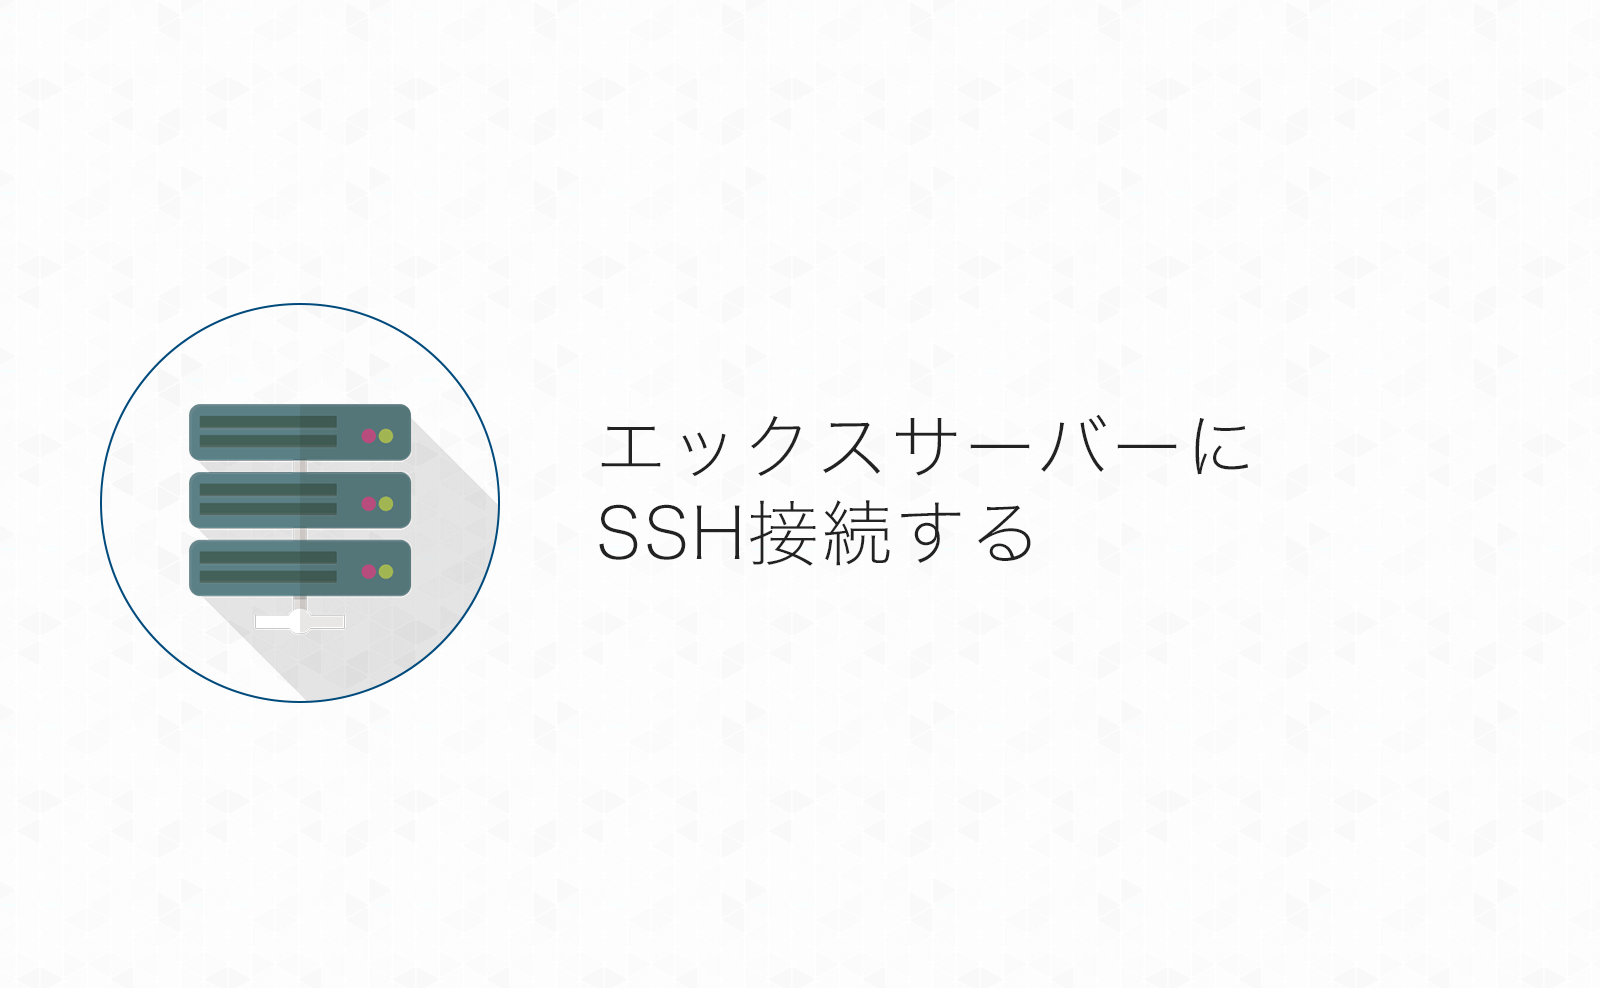 エックスサーバーにSSH接続するための準備手順まとめ！